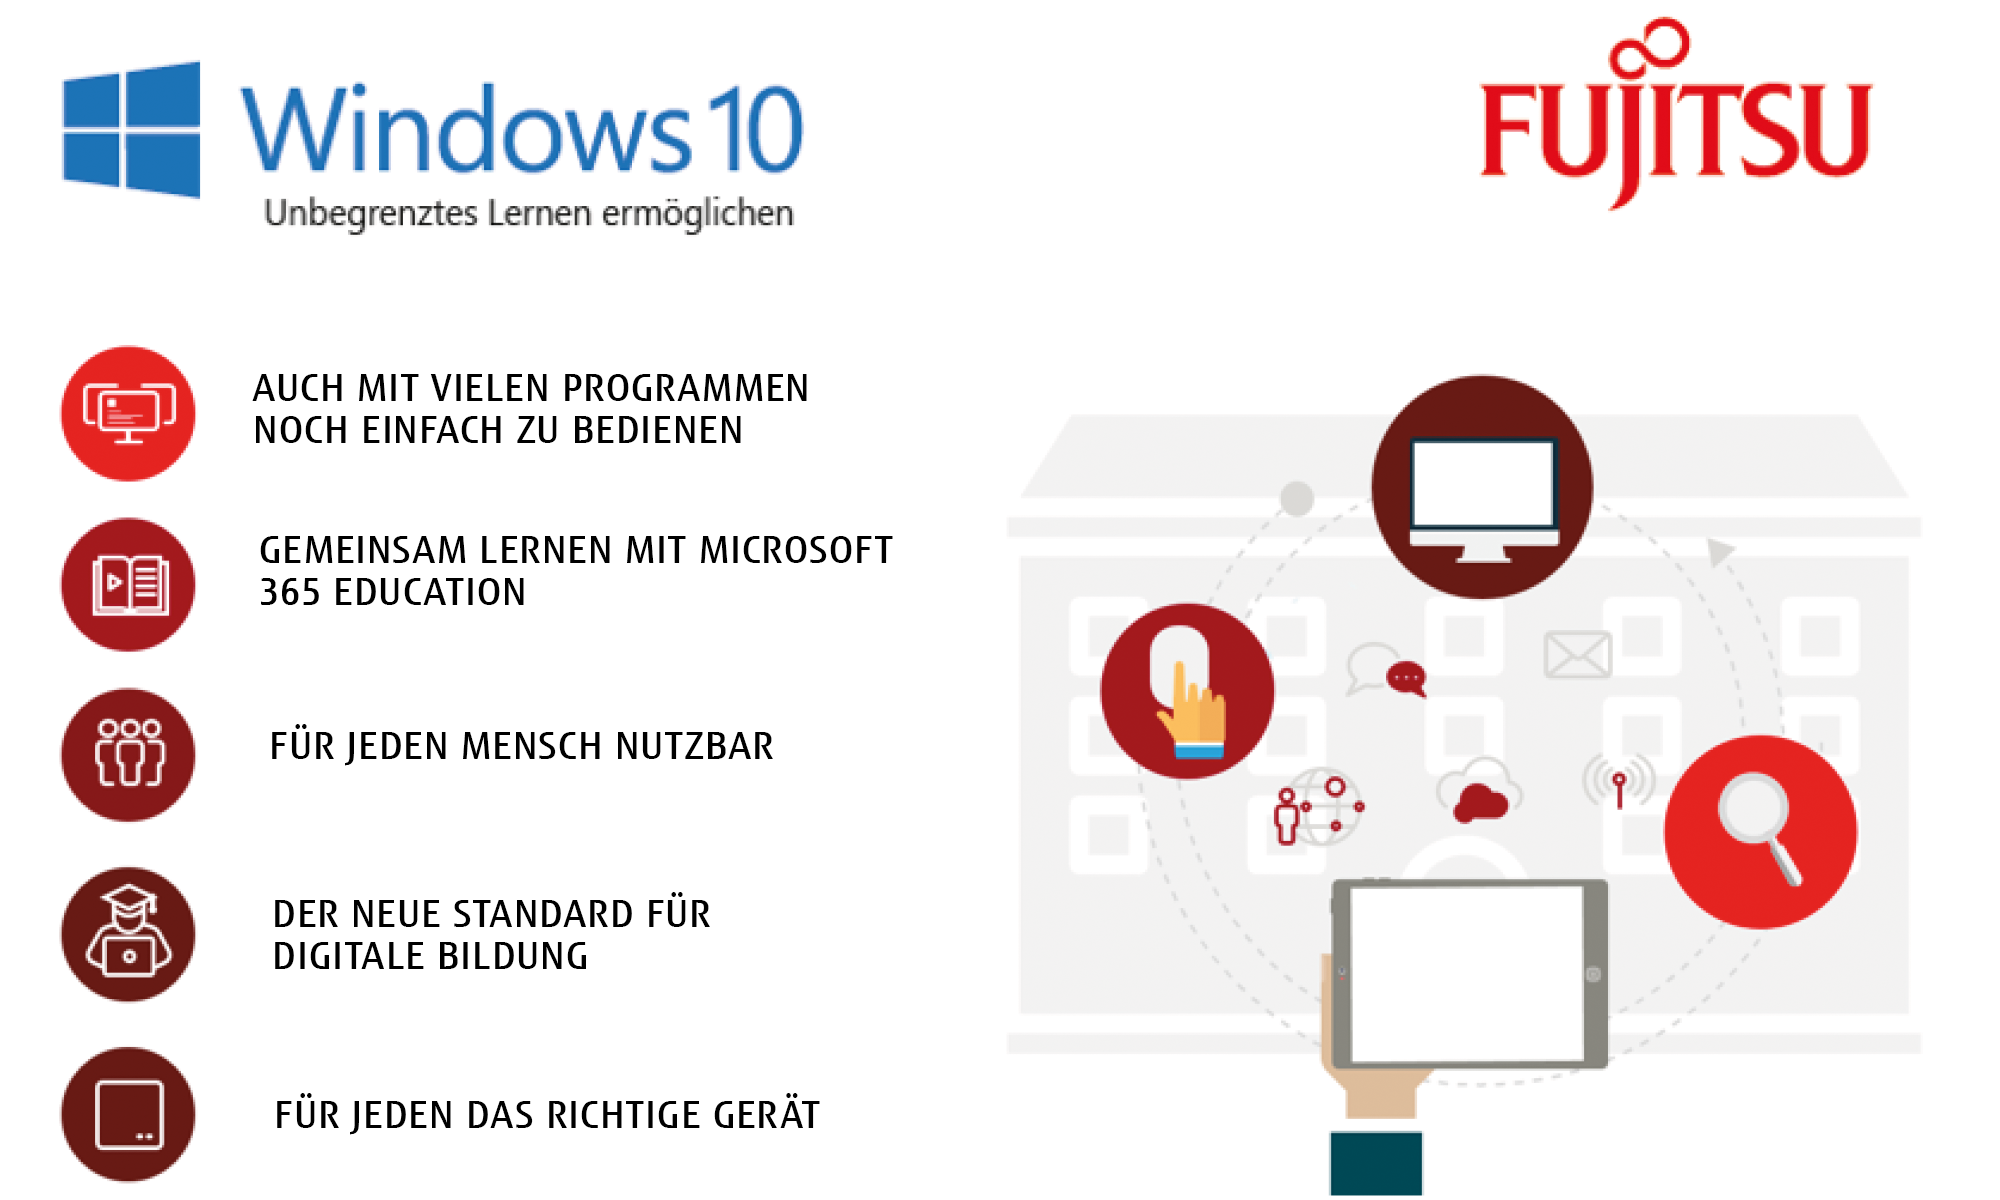 5 Gute Gründe für Windows 10 - Lehrende